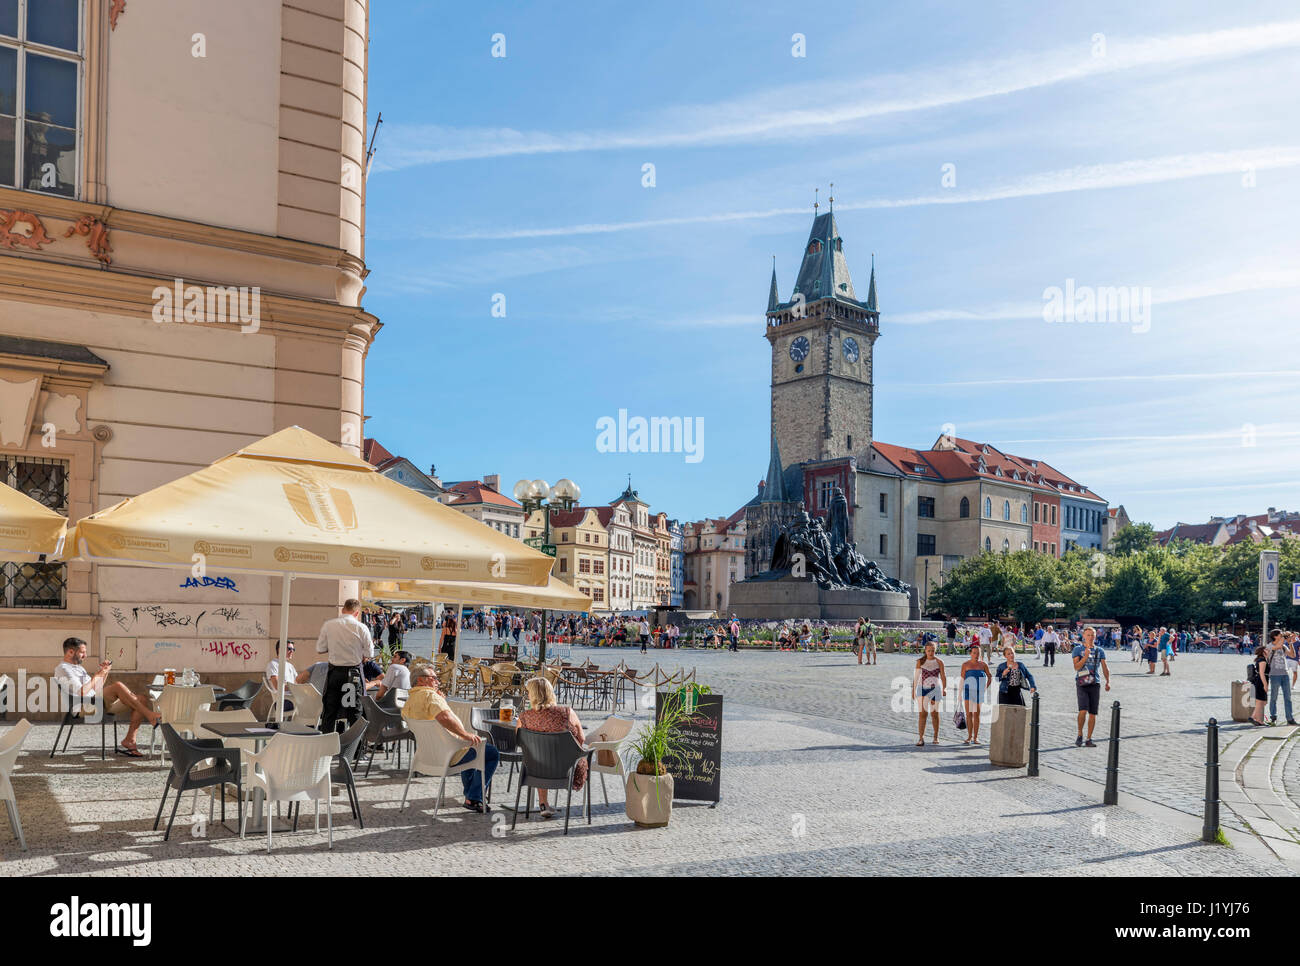 Cafe de la place de la vieille ville (Staroměstské náměstí), Staré Město, Prague, République Tchèque Banque D'Images